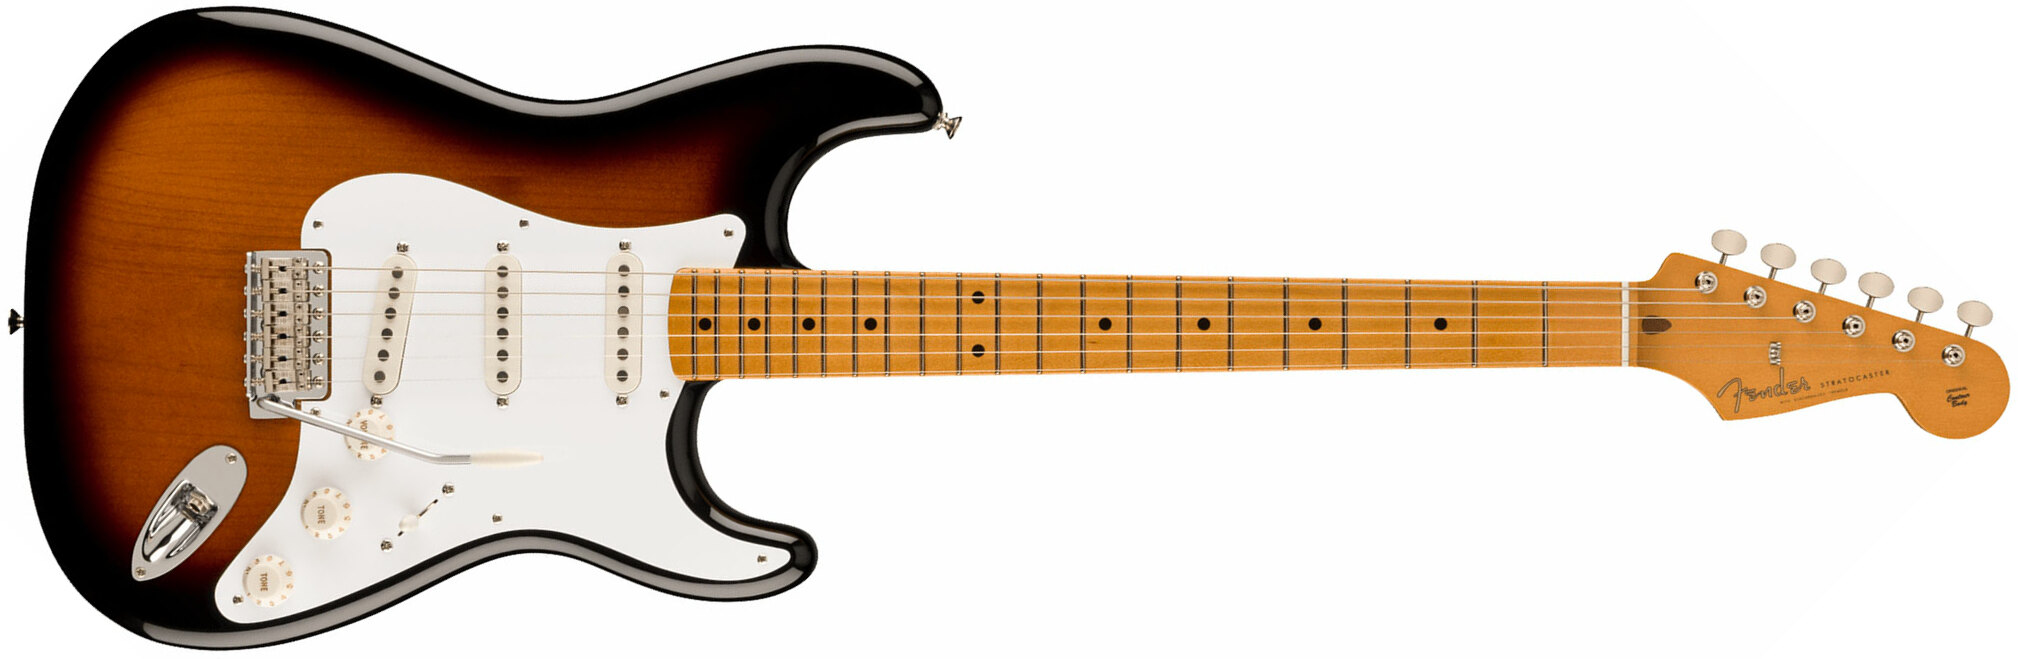 Fender Strat 50s Vintera 2 Mex 3s Trem Mn - 2-color Sunburst - Str shape electric guitar - Main picture